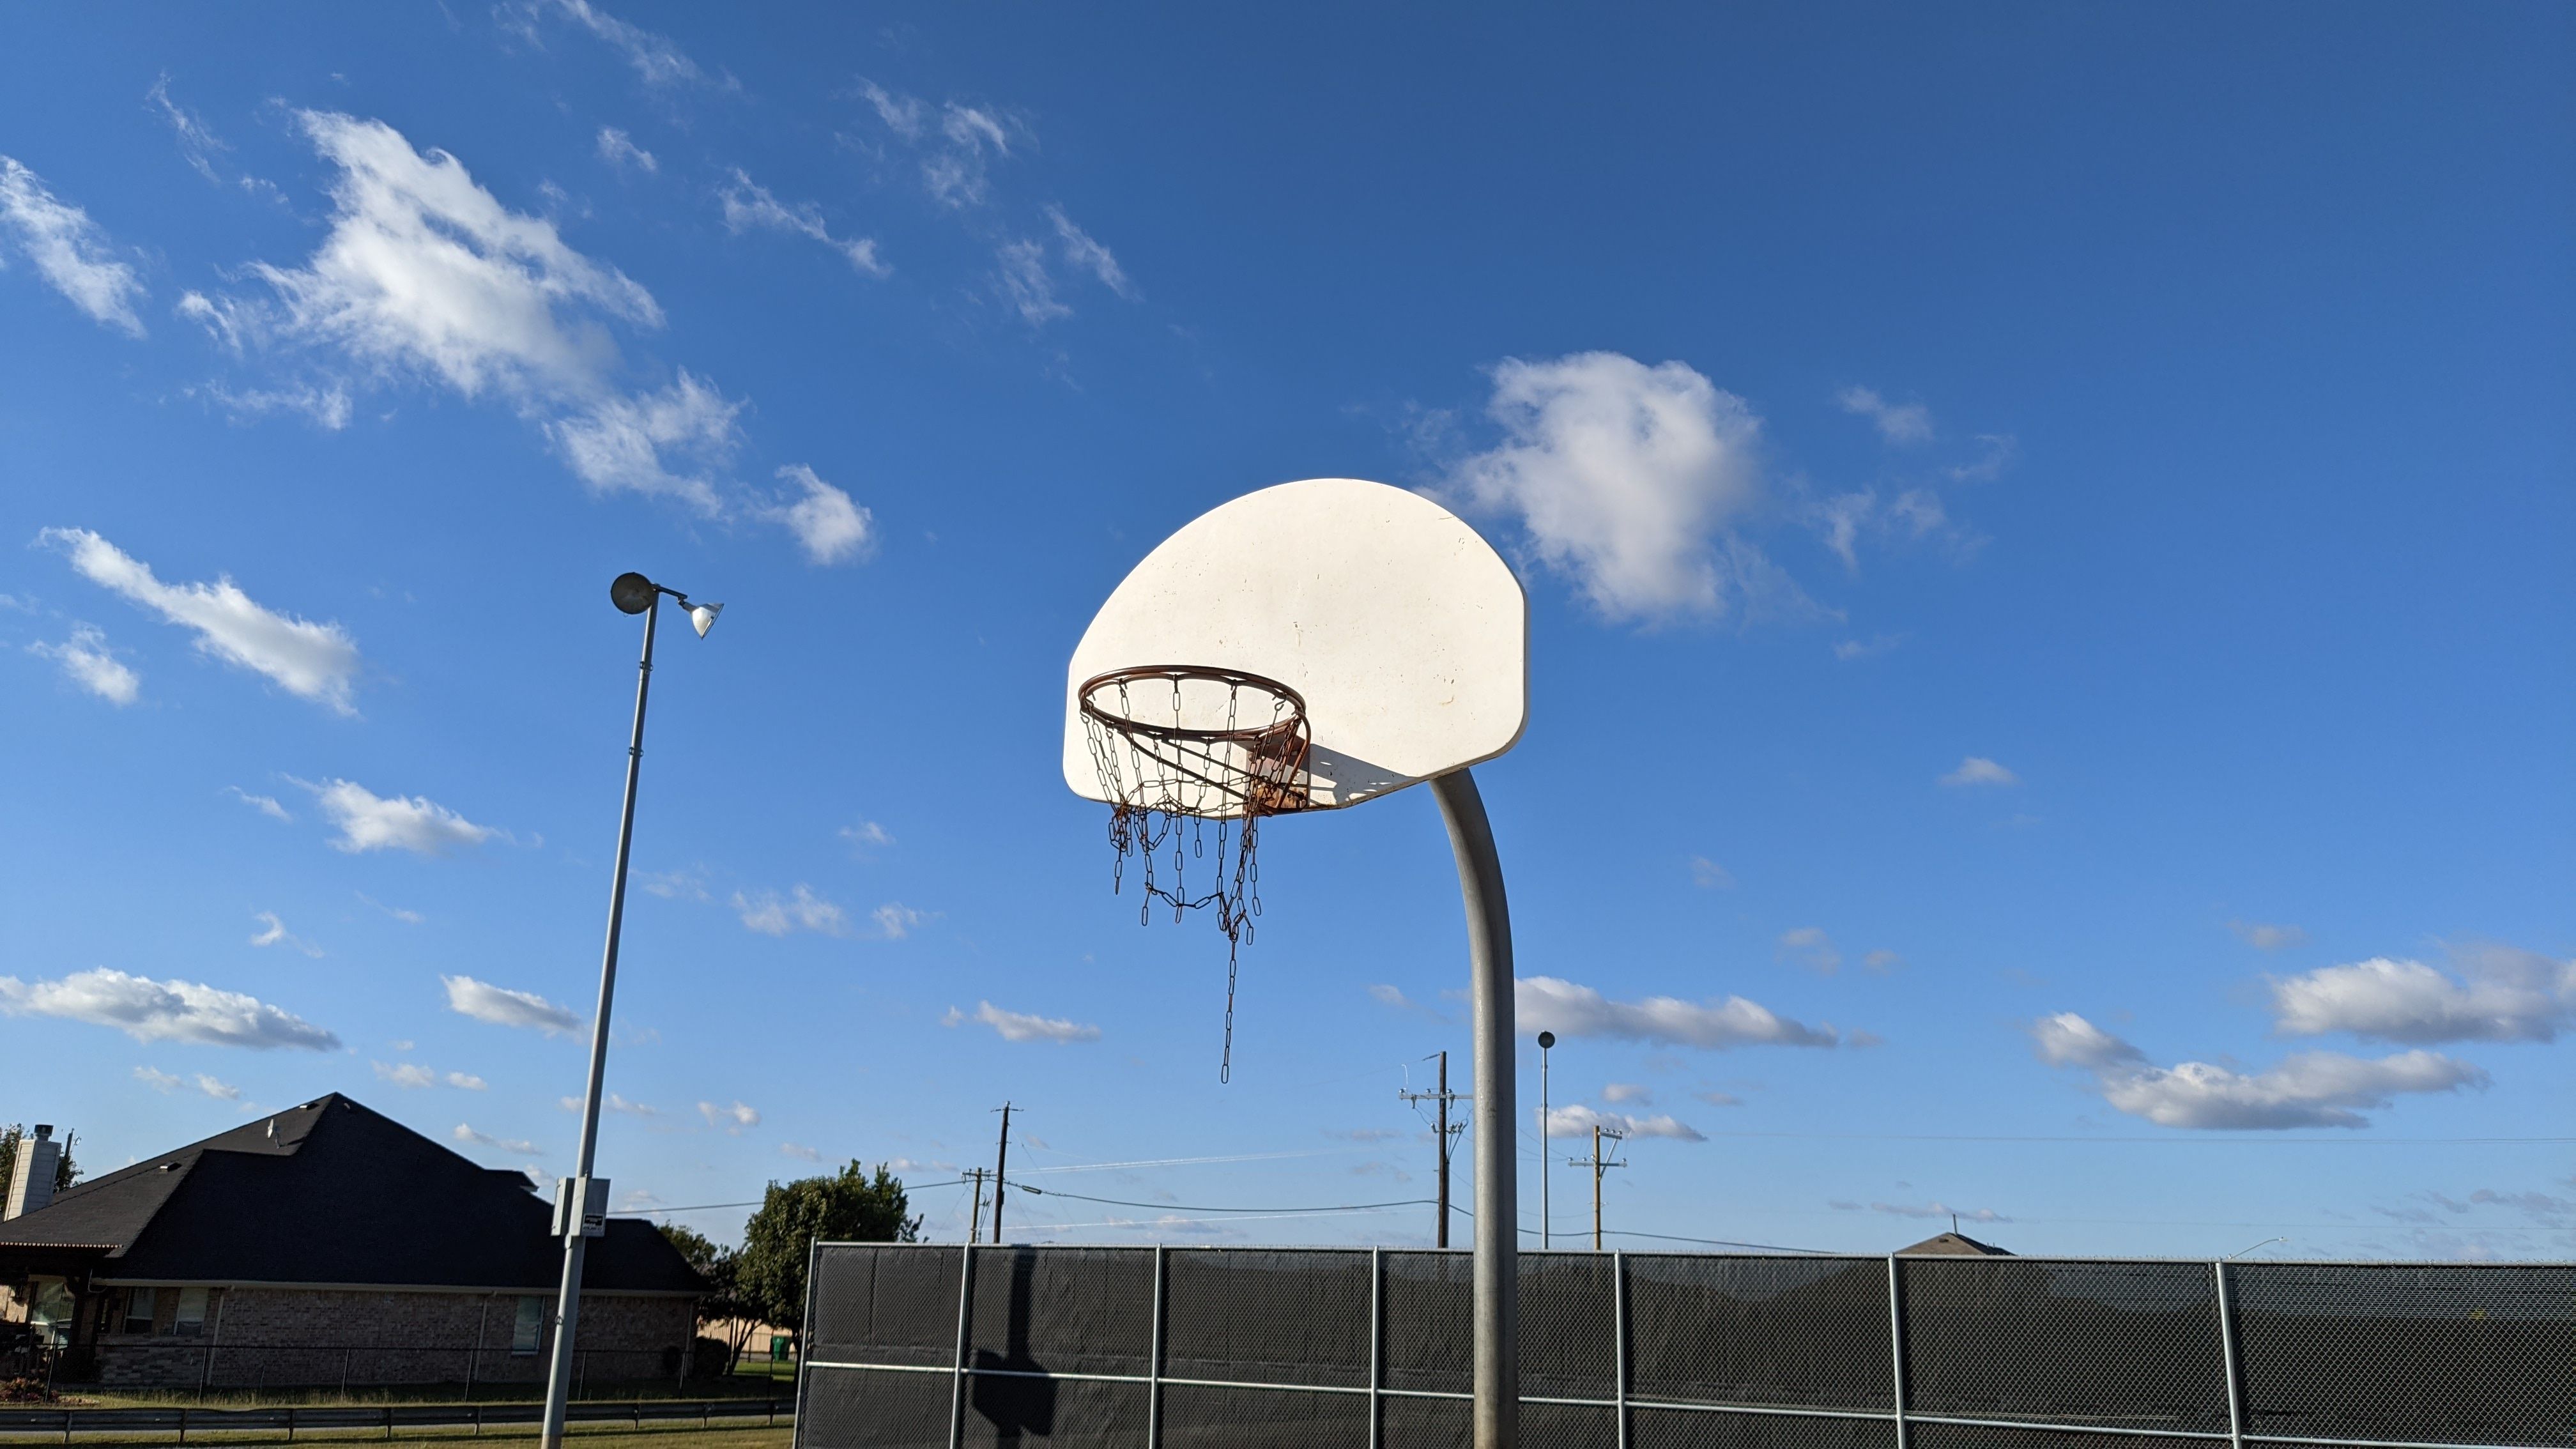 Pixel 4a 5G camera shots: basketball hoop